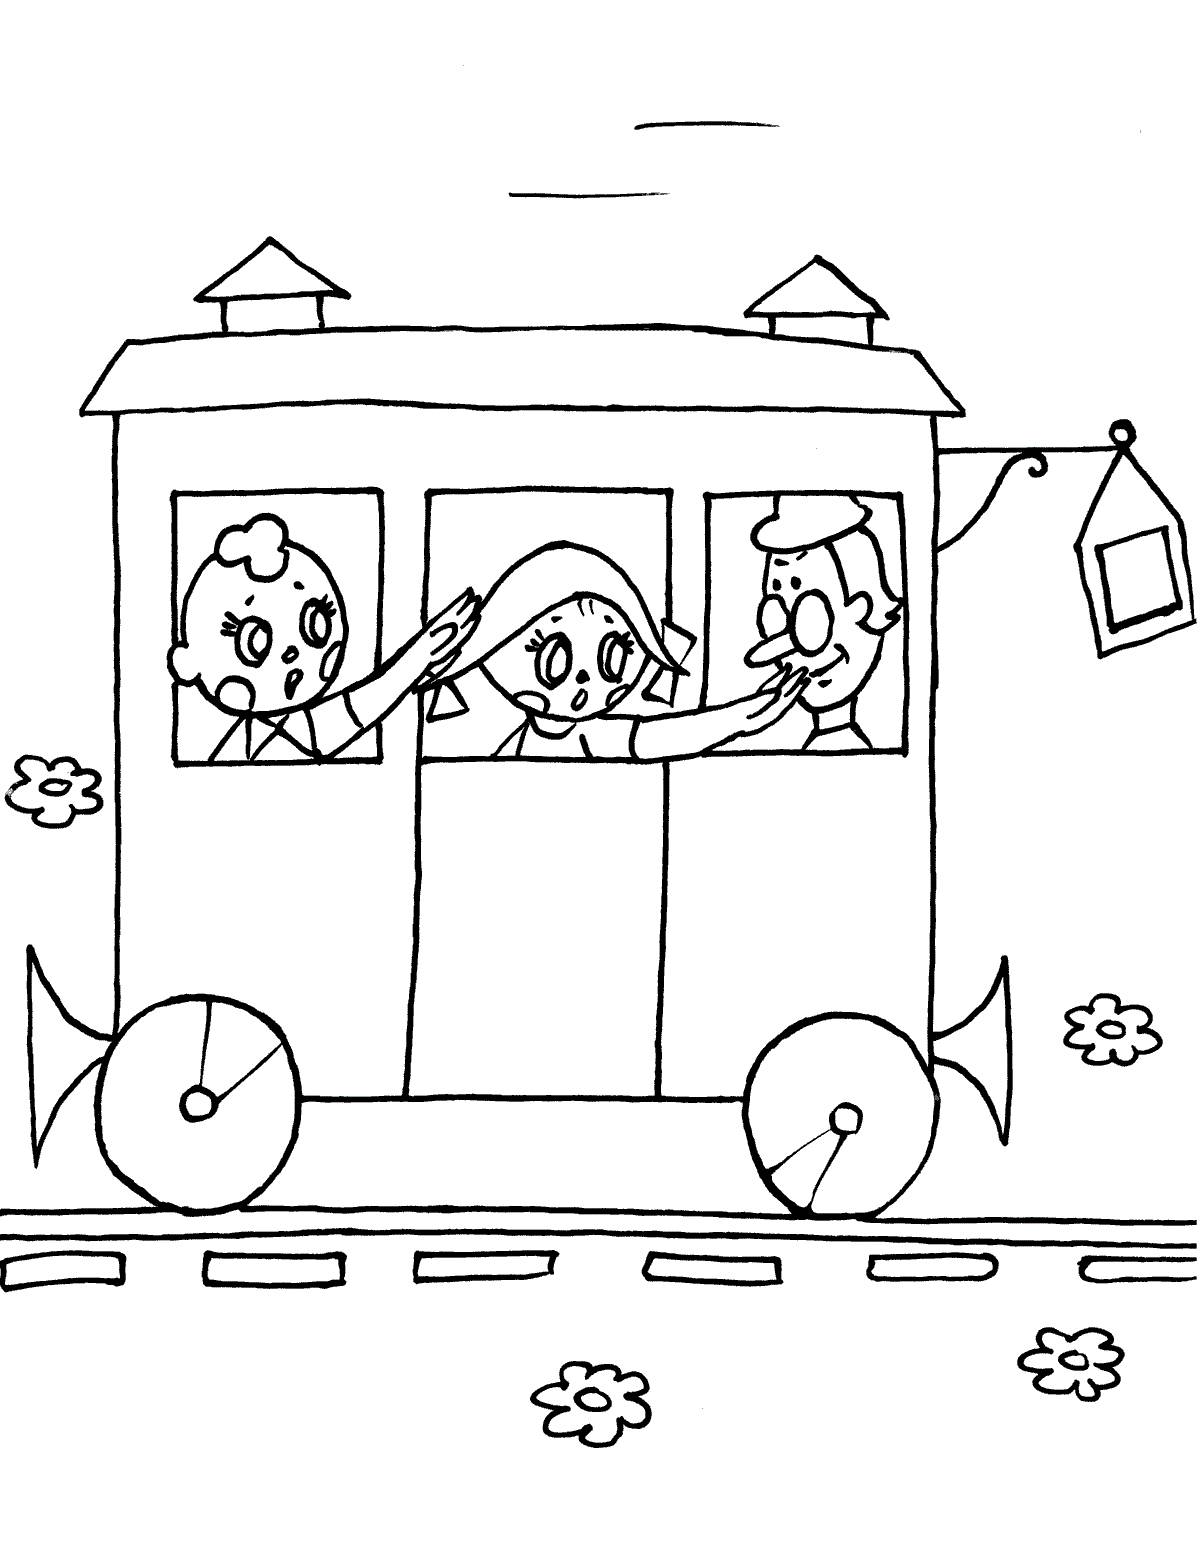 Children in the trailer